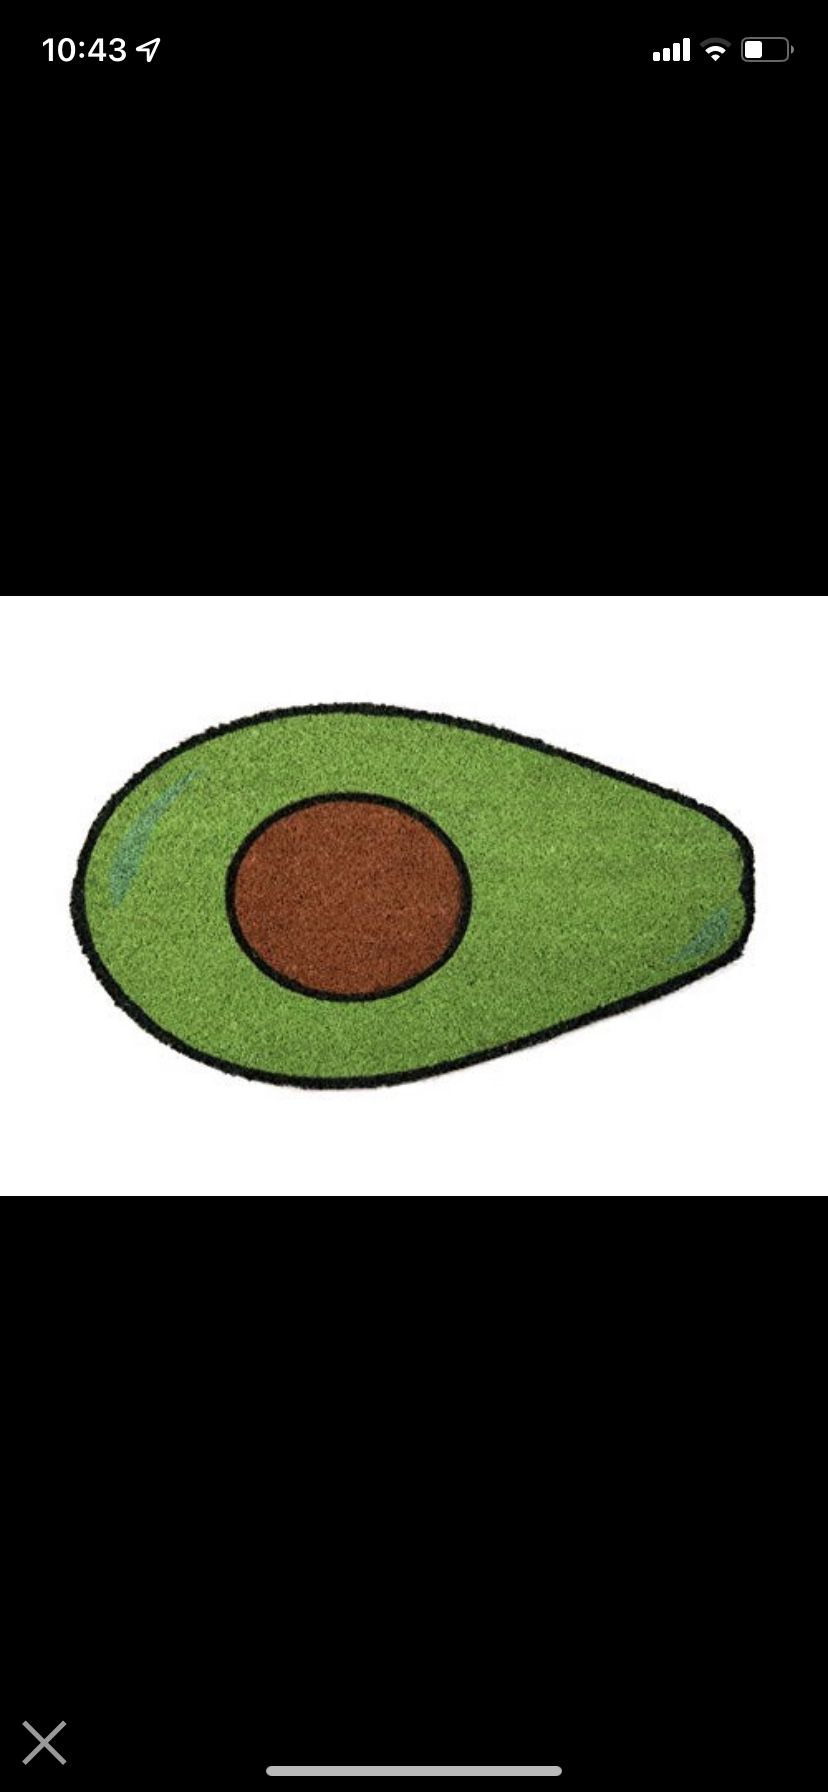 Rug Indoor/Outdoor Doormat Avocado, Anti Slip Backing